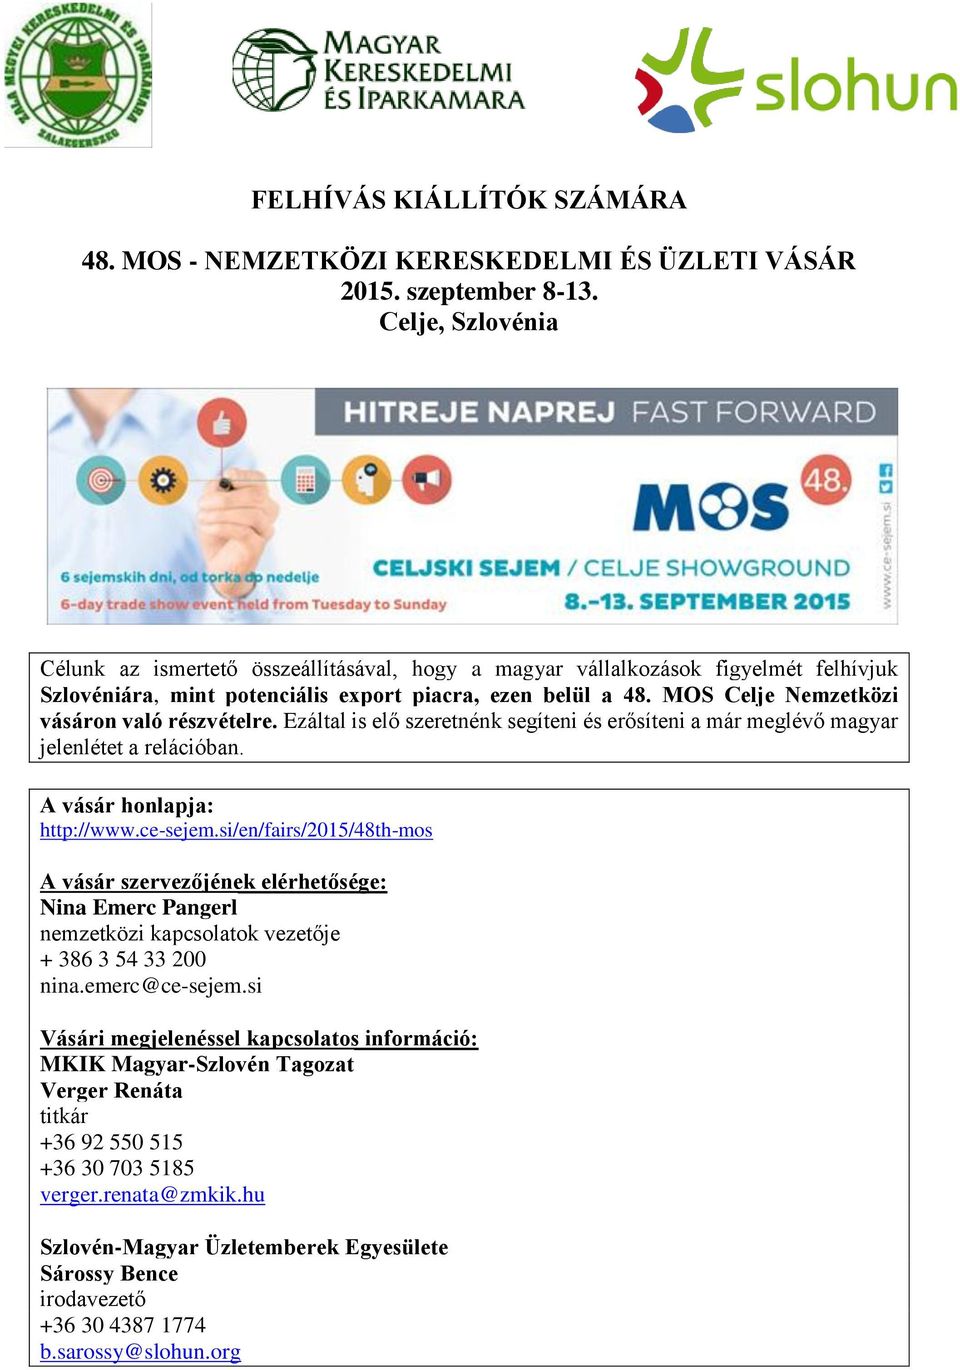 MOS Celje Nemzetközi vásáron való részvételre. Ezáltal is elő szeretnénk segíteni és erősíteni a már meglévő magyar jelenlétet a relációban. A vásár honlapja: http://www.ce-sejem.